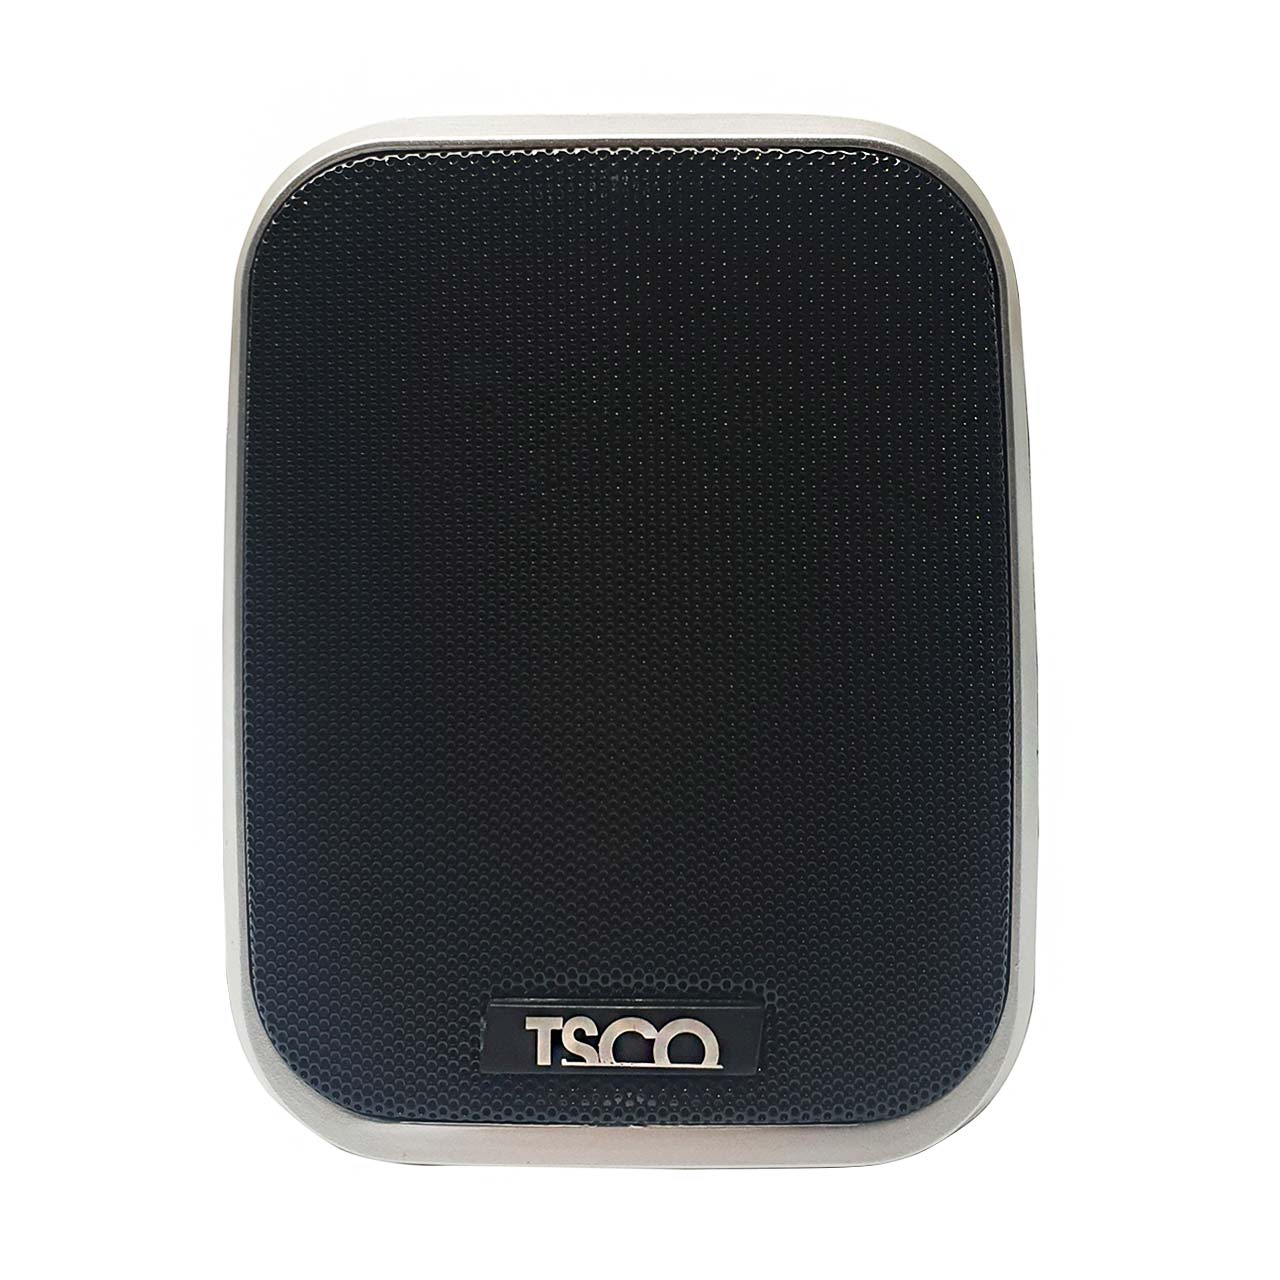 TSCO TS 2063 Desktop Speaker